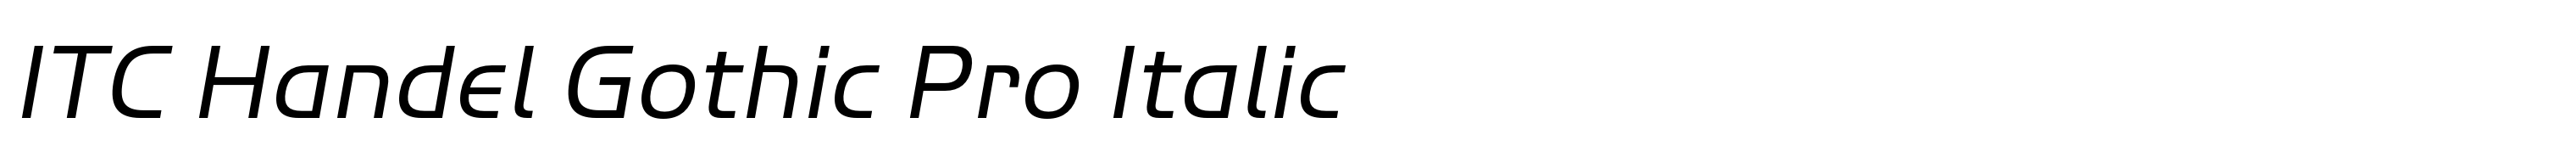 ITC Handel Gothic Pro Italic